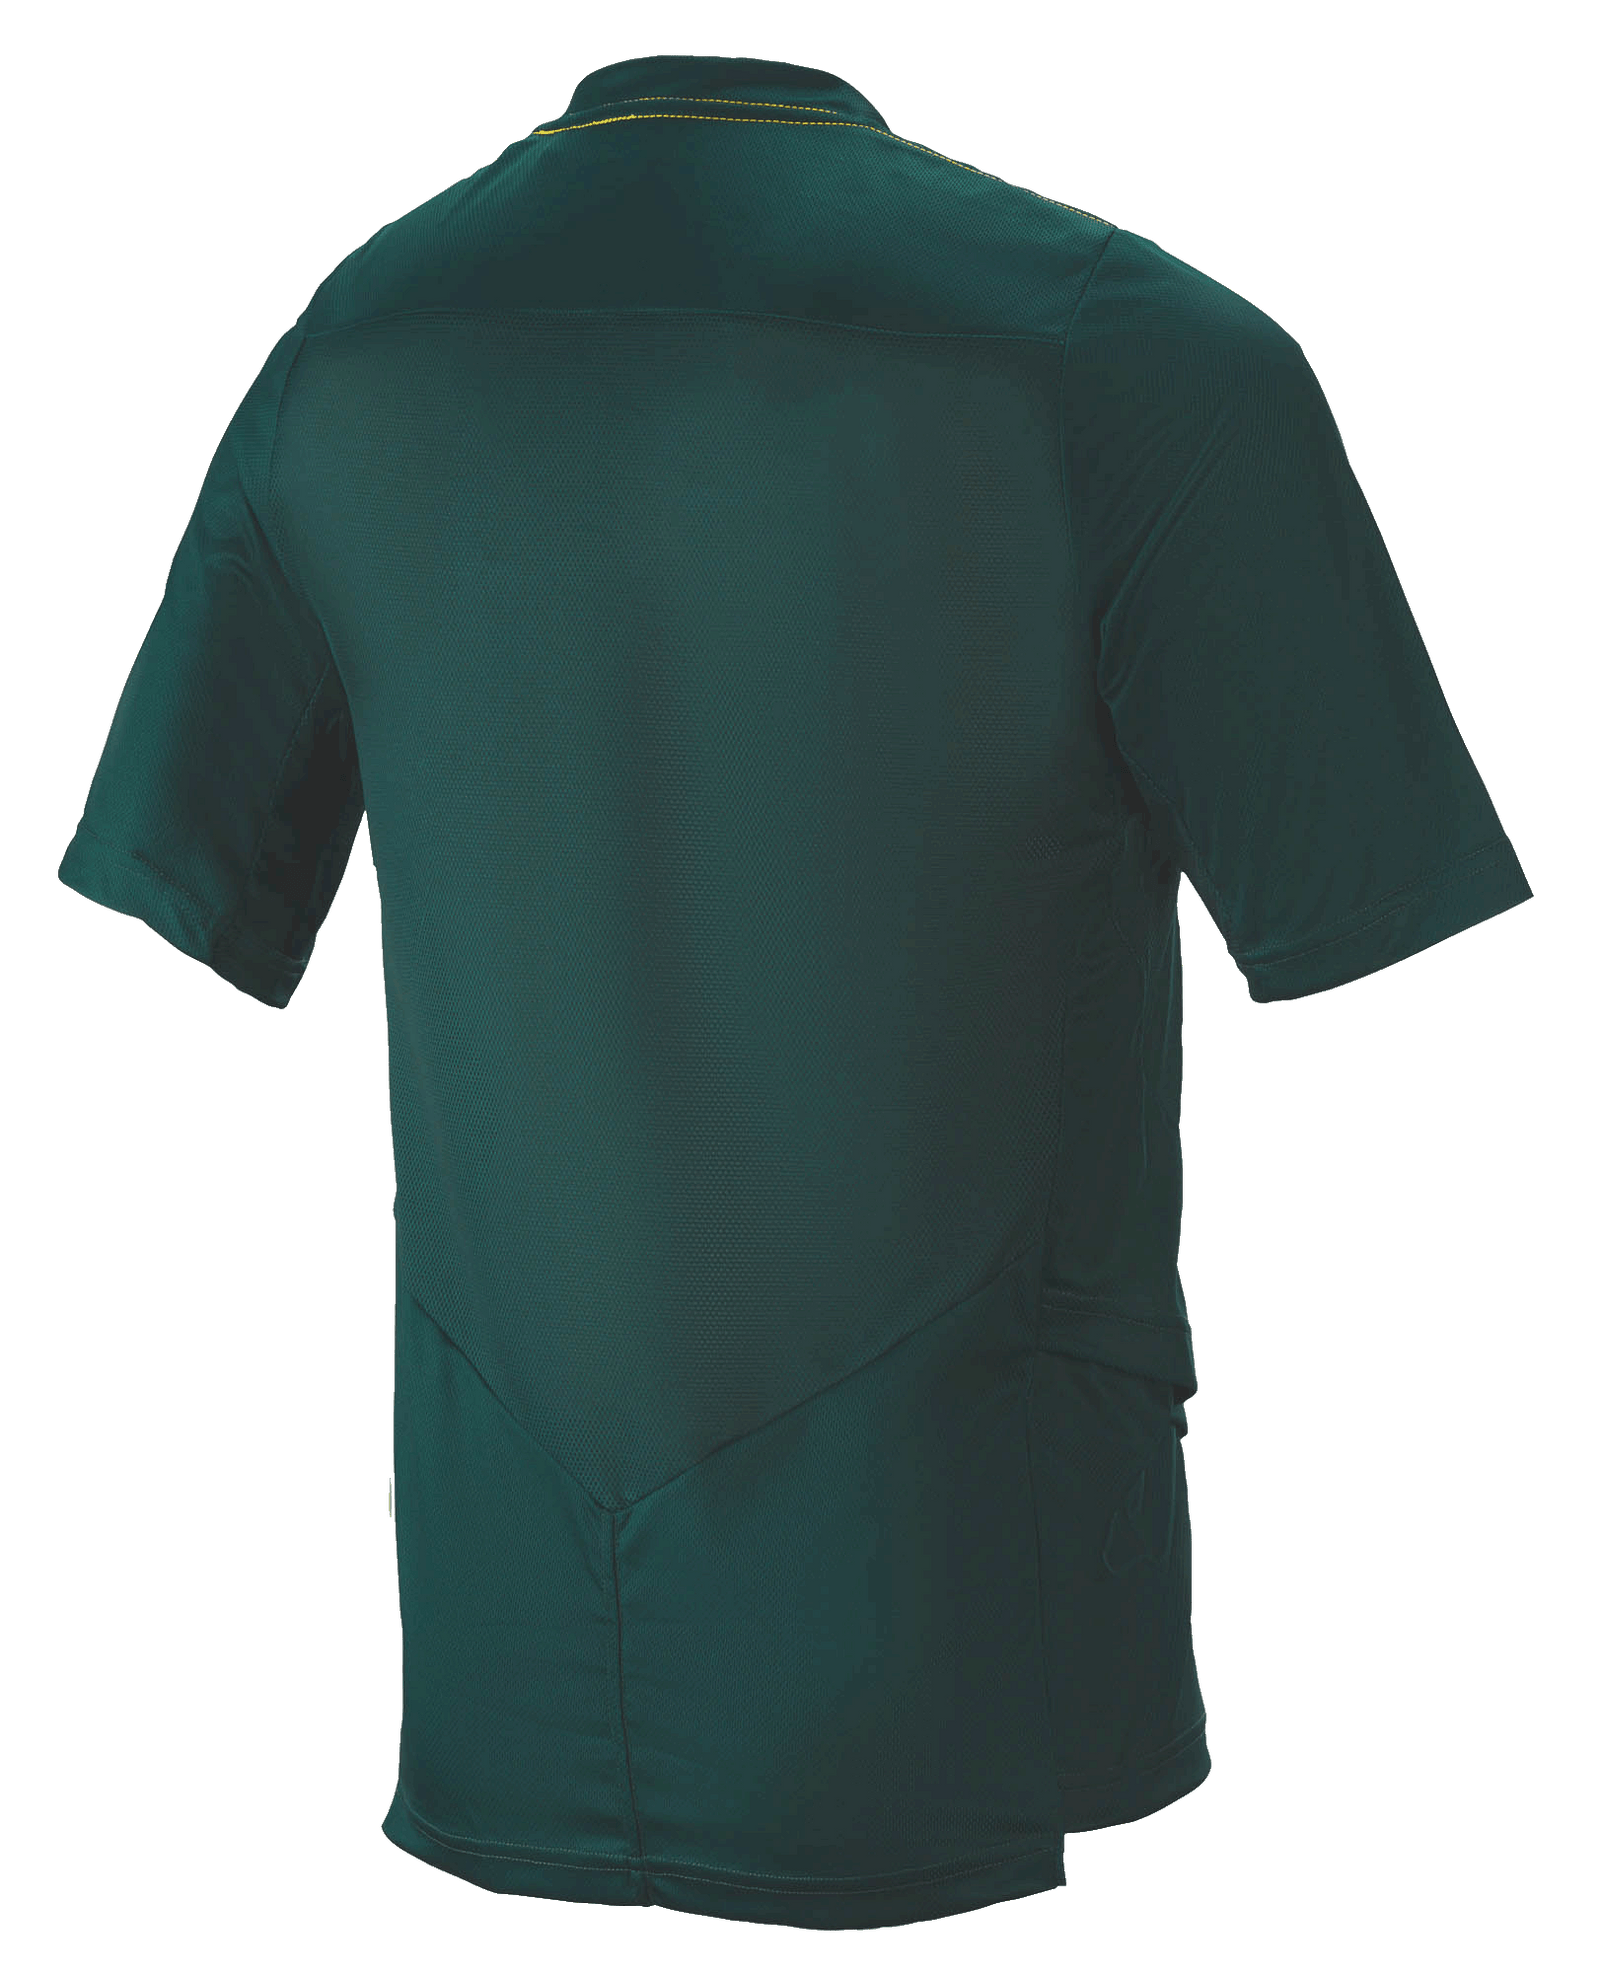 Drop 6.0 Jersey - Short Sleeve